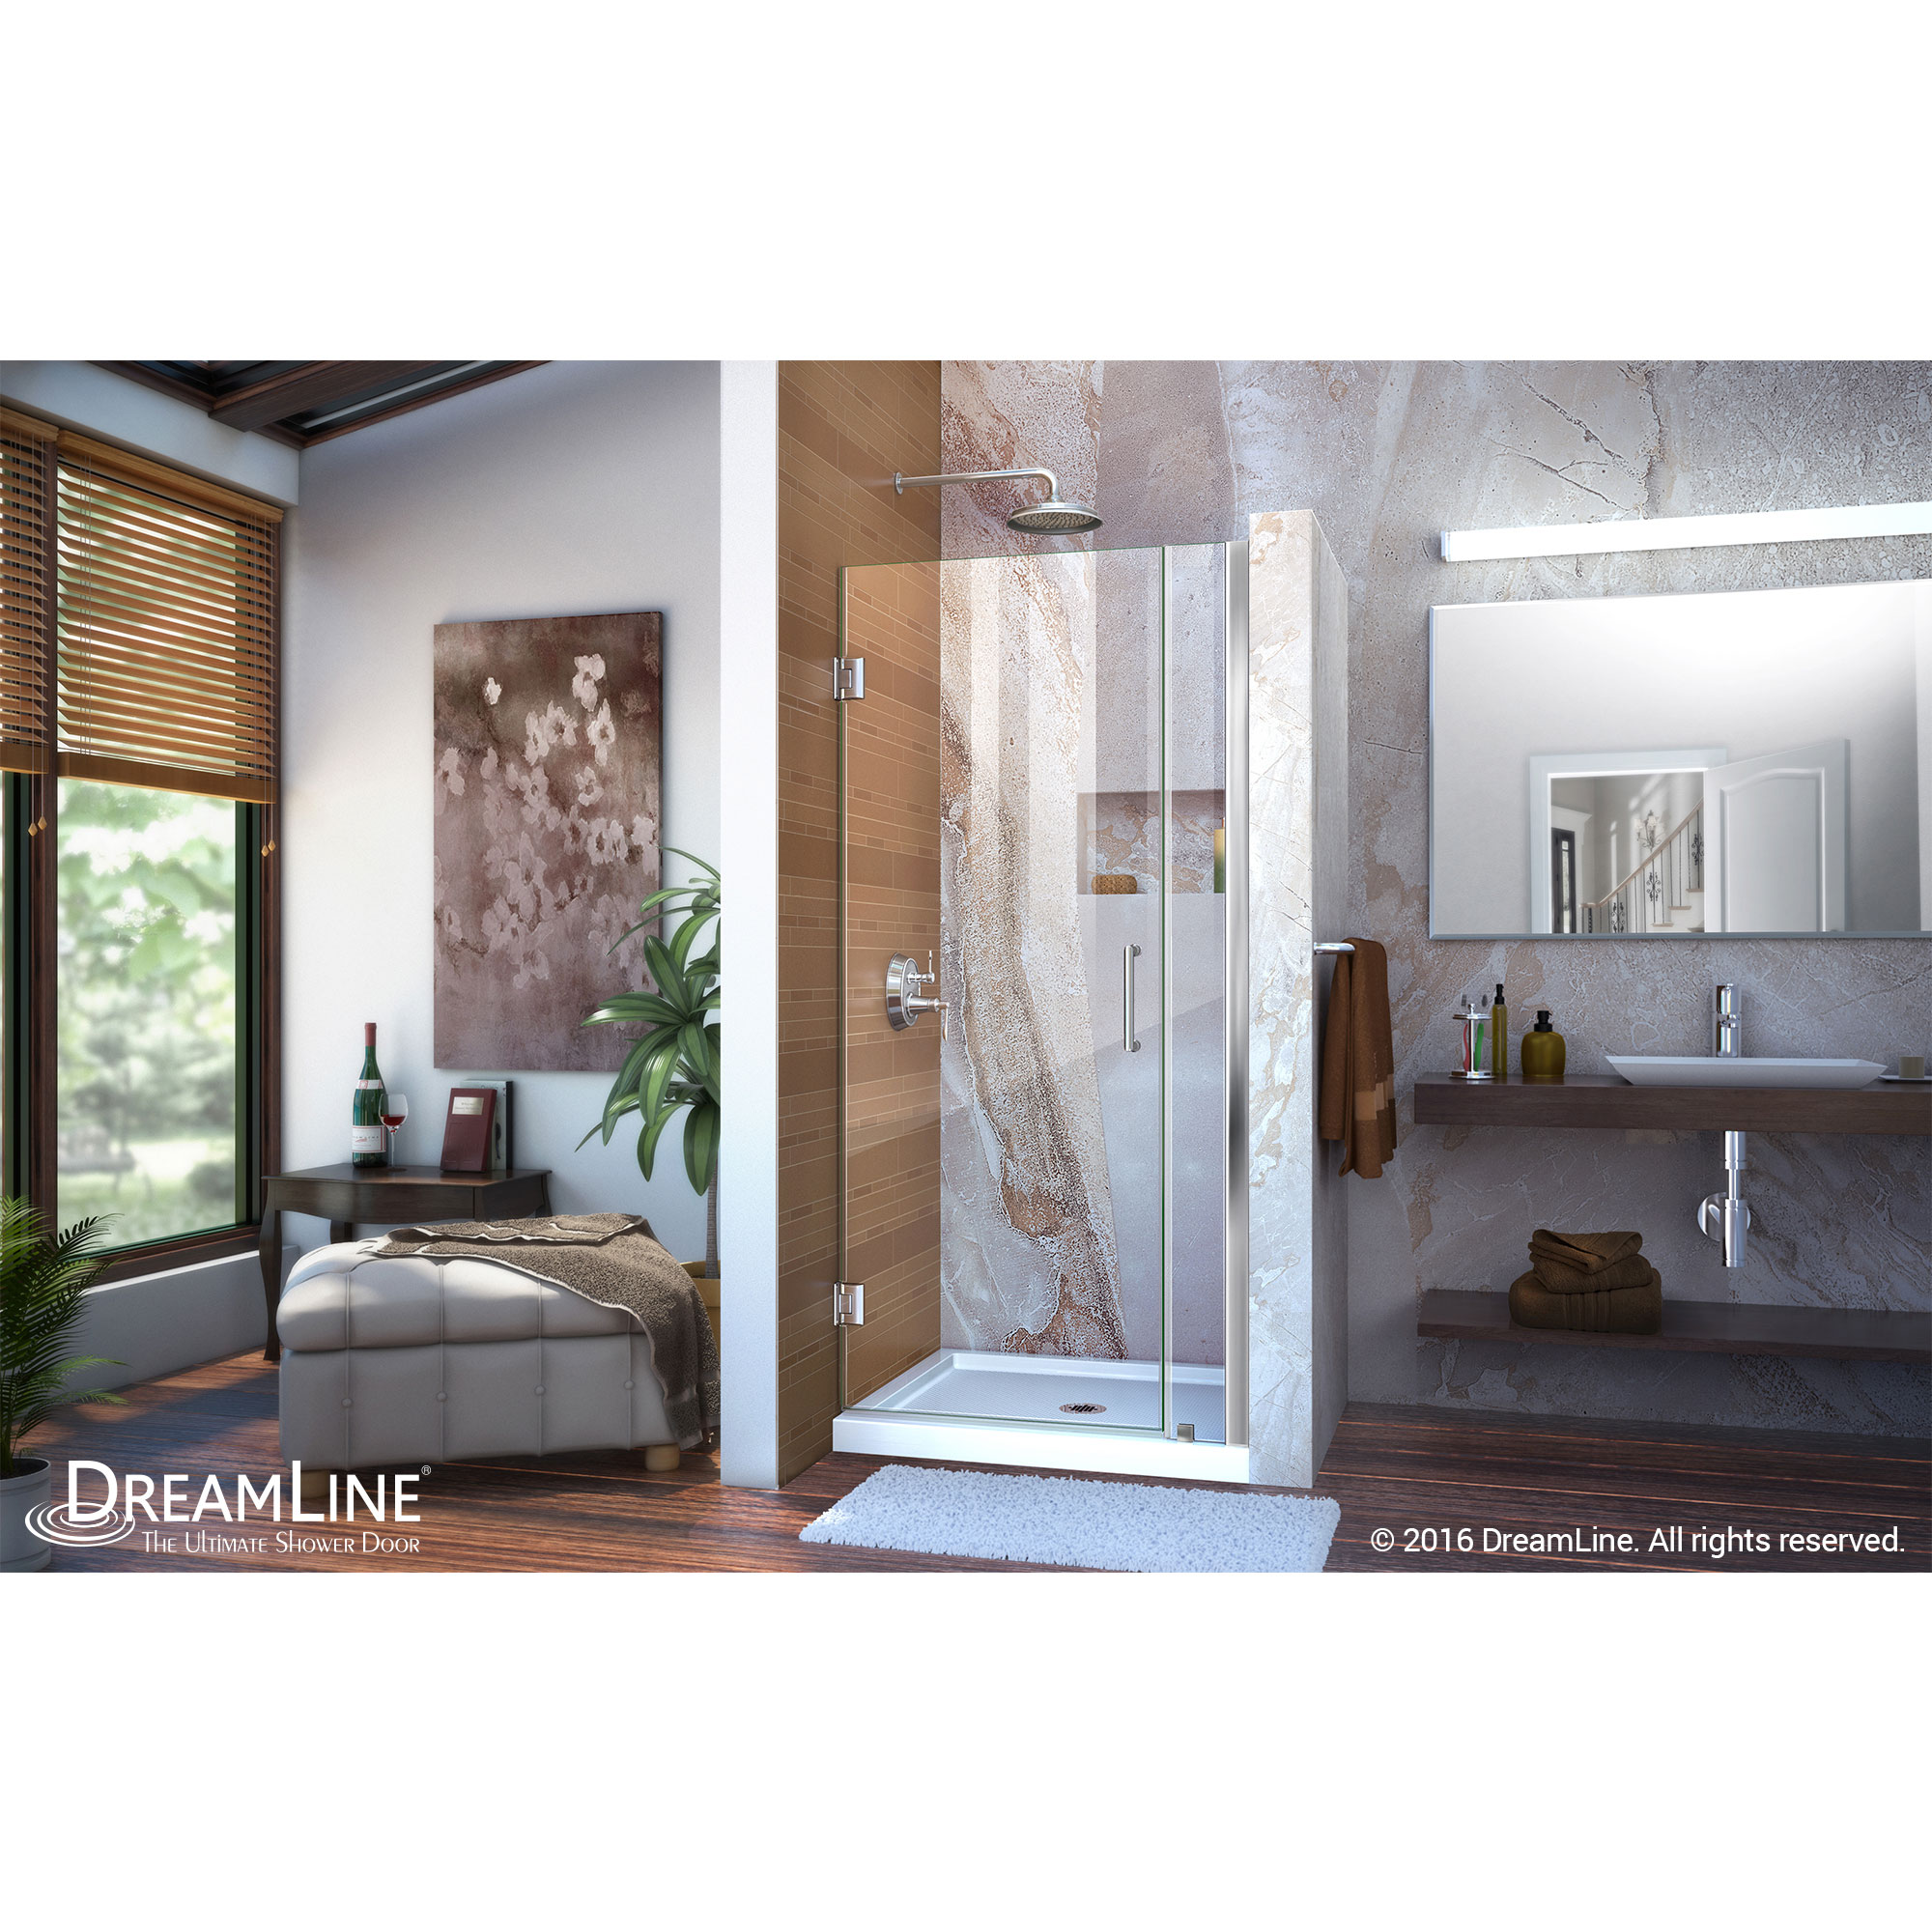 Unidoor 33 to 34" Frameless Hinged Shower Door, Clear 3/8" Glass Door, Chrome